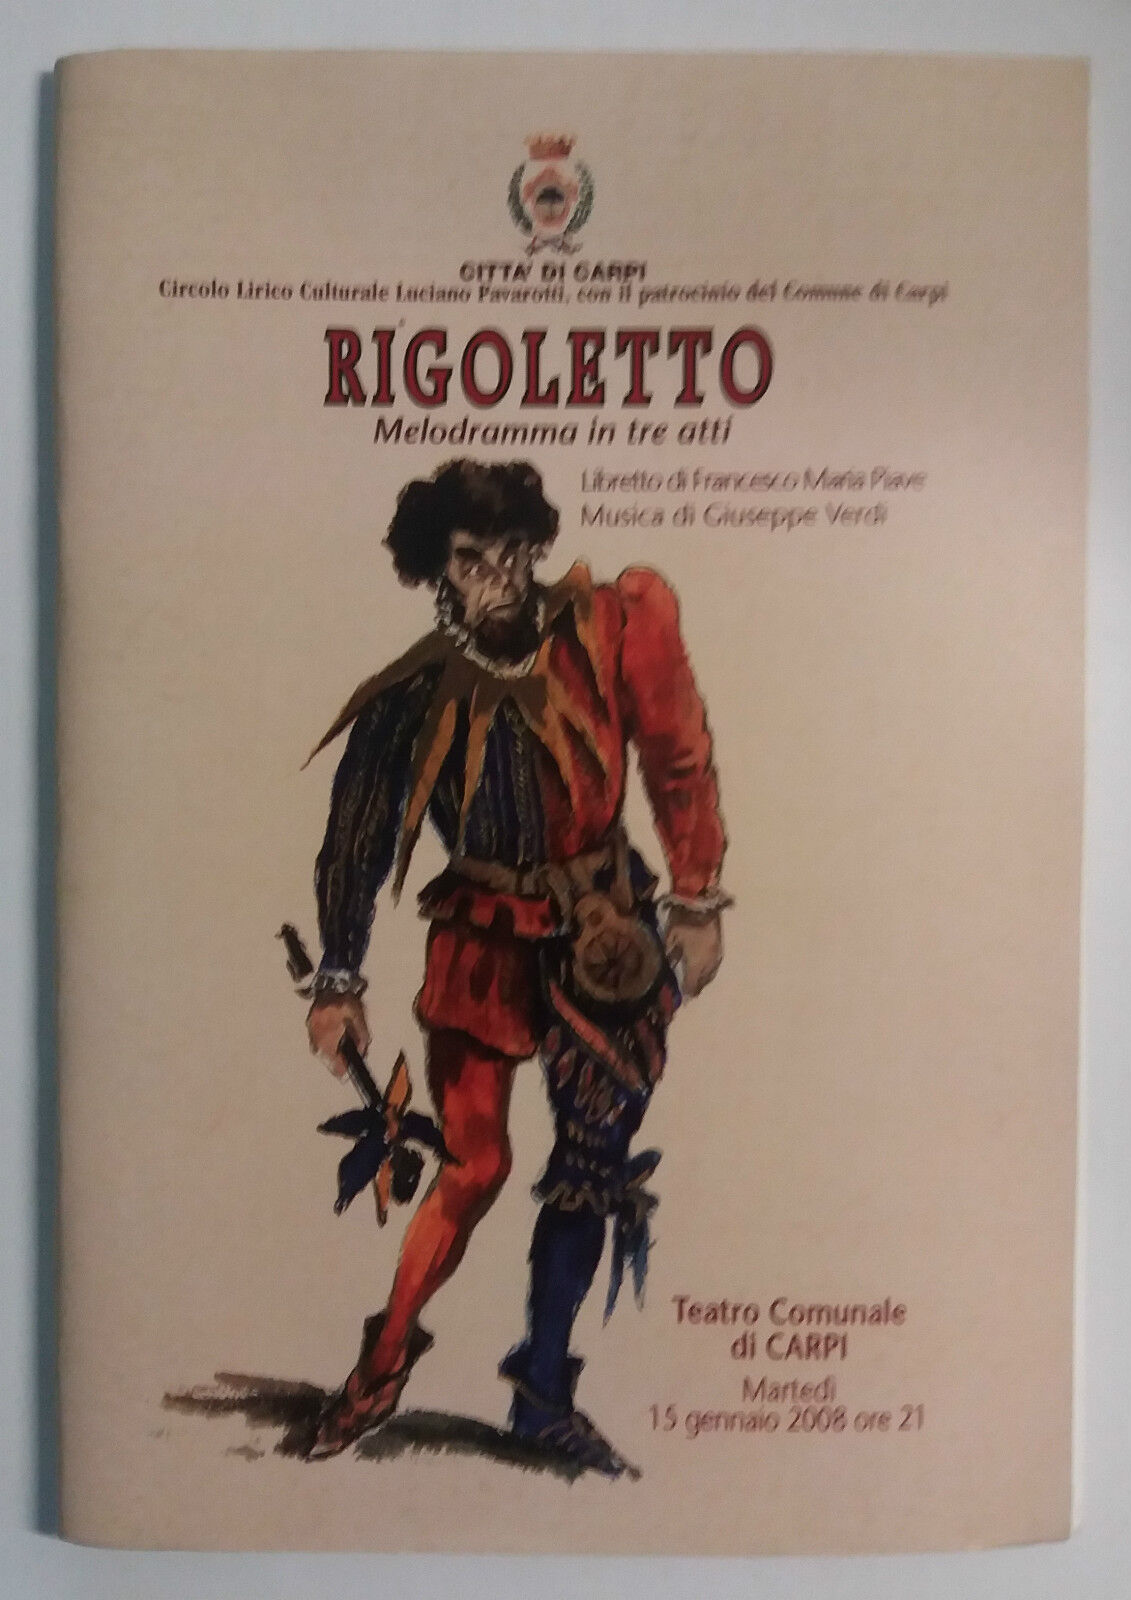 Rigoletto, melodramma in tre atti - AA. VV. - Citt? di Carpi - 2007 - G